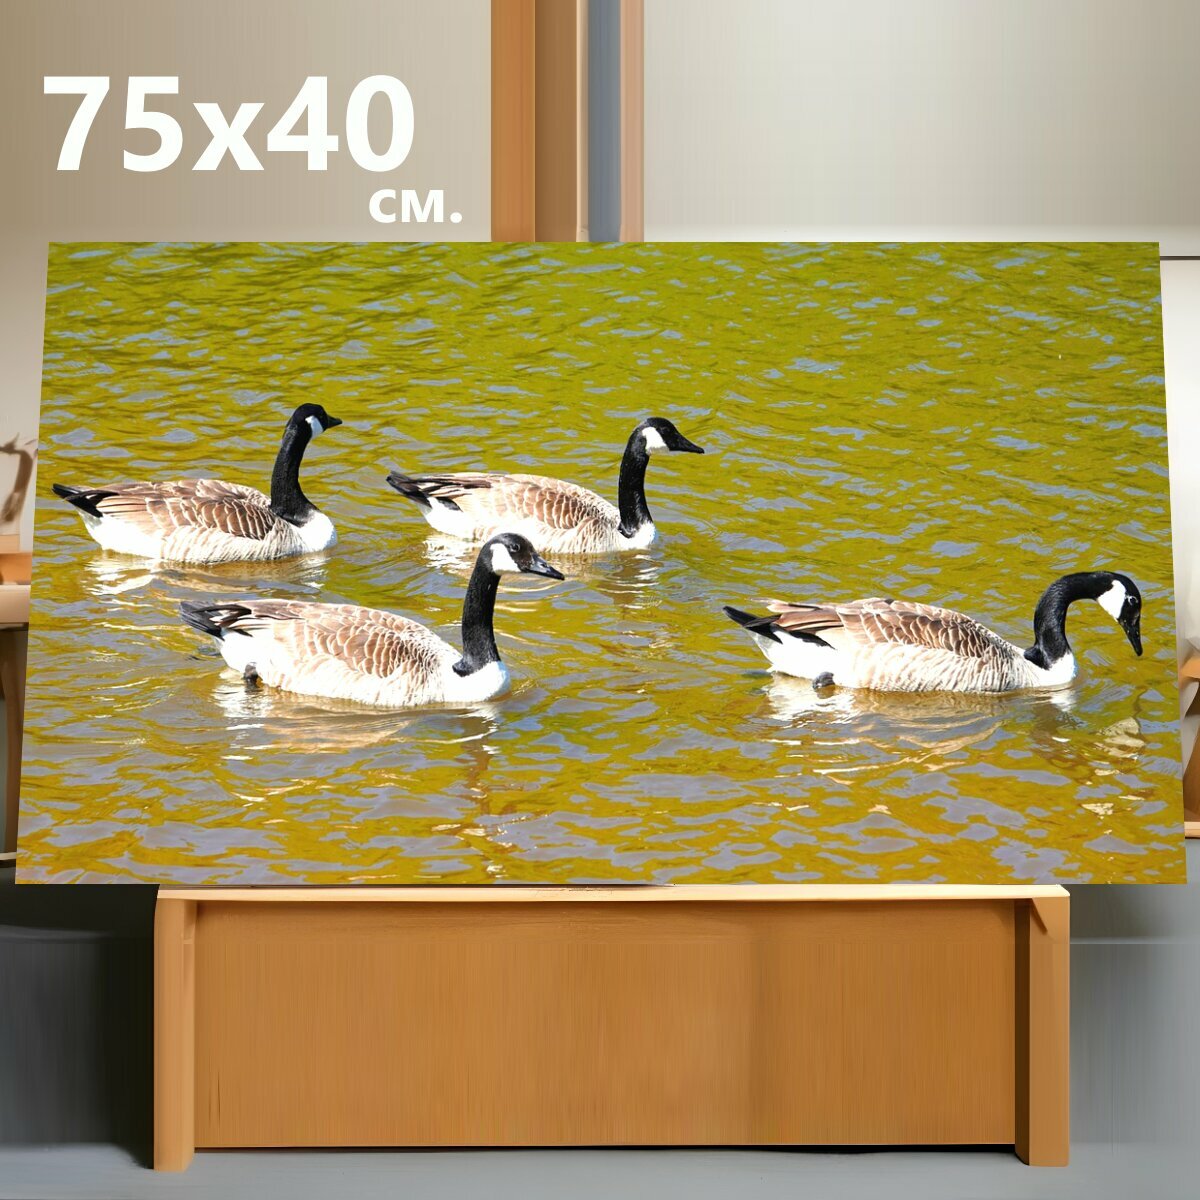 Картина на холсте "Гуси, животные, птицы" на подрамнике 75х40 см. для интерьера